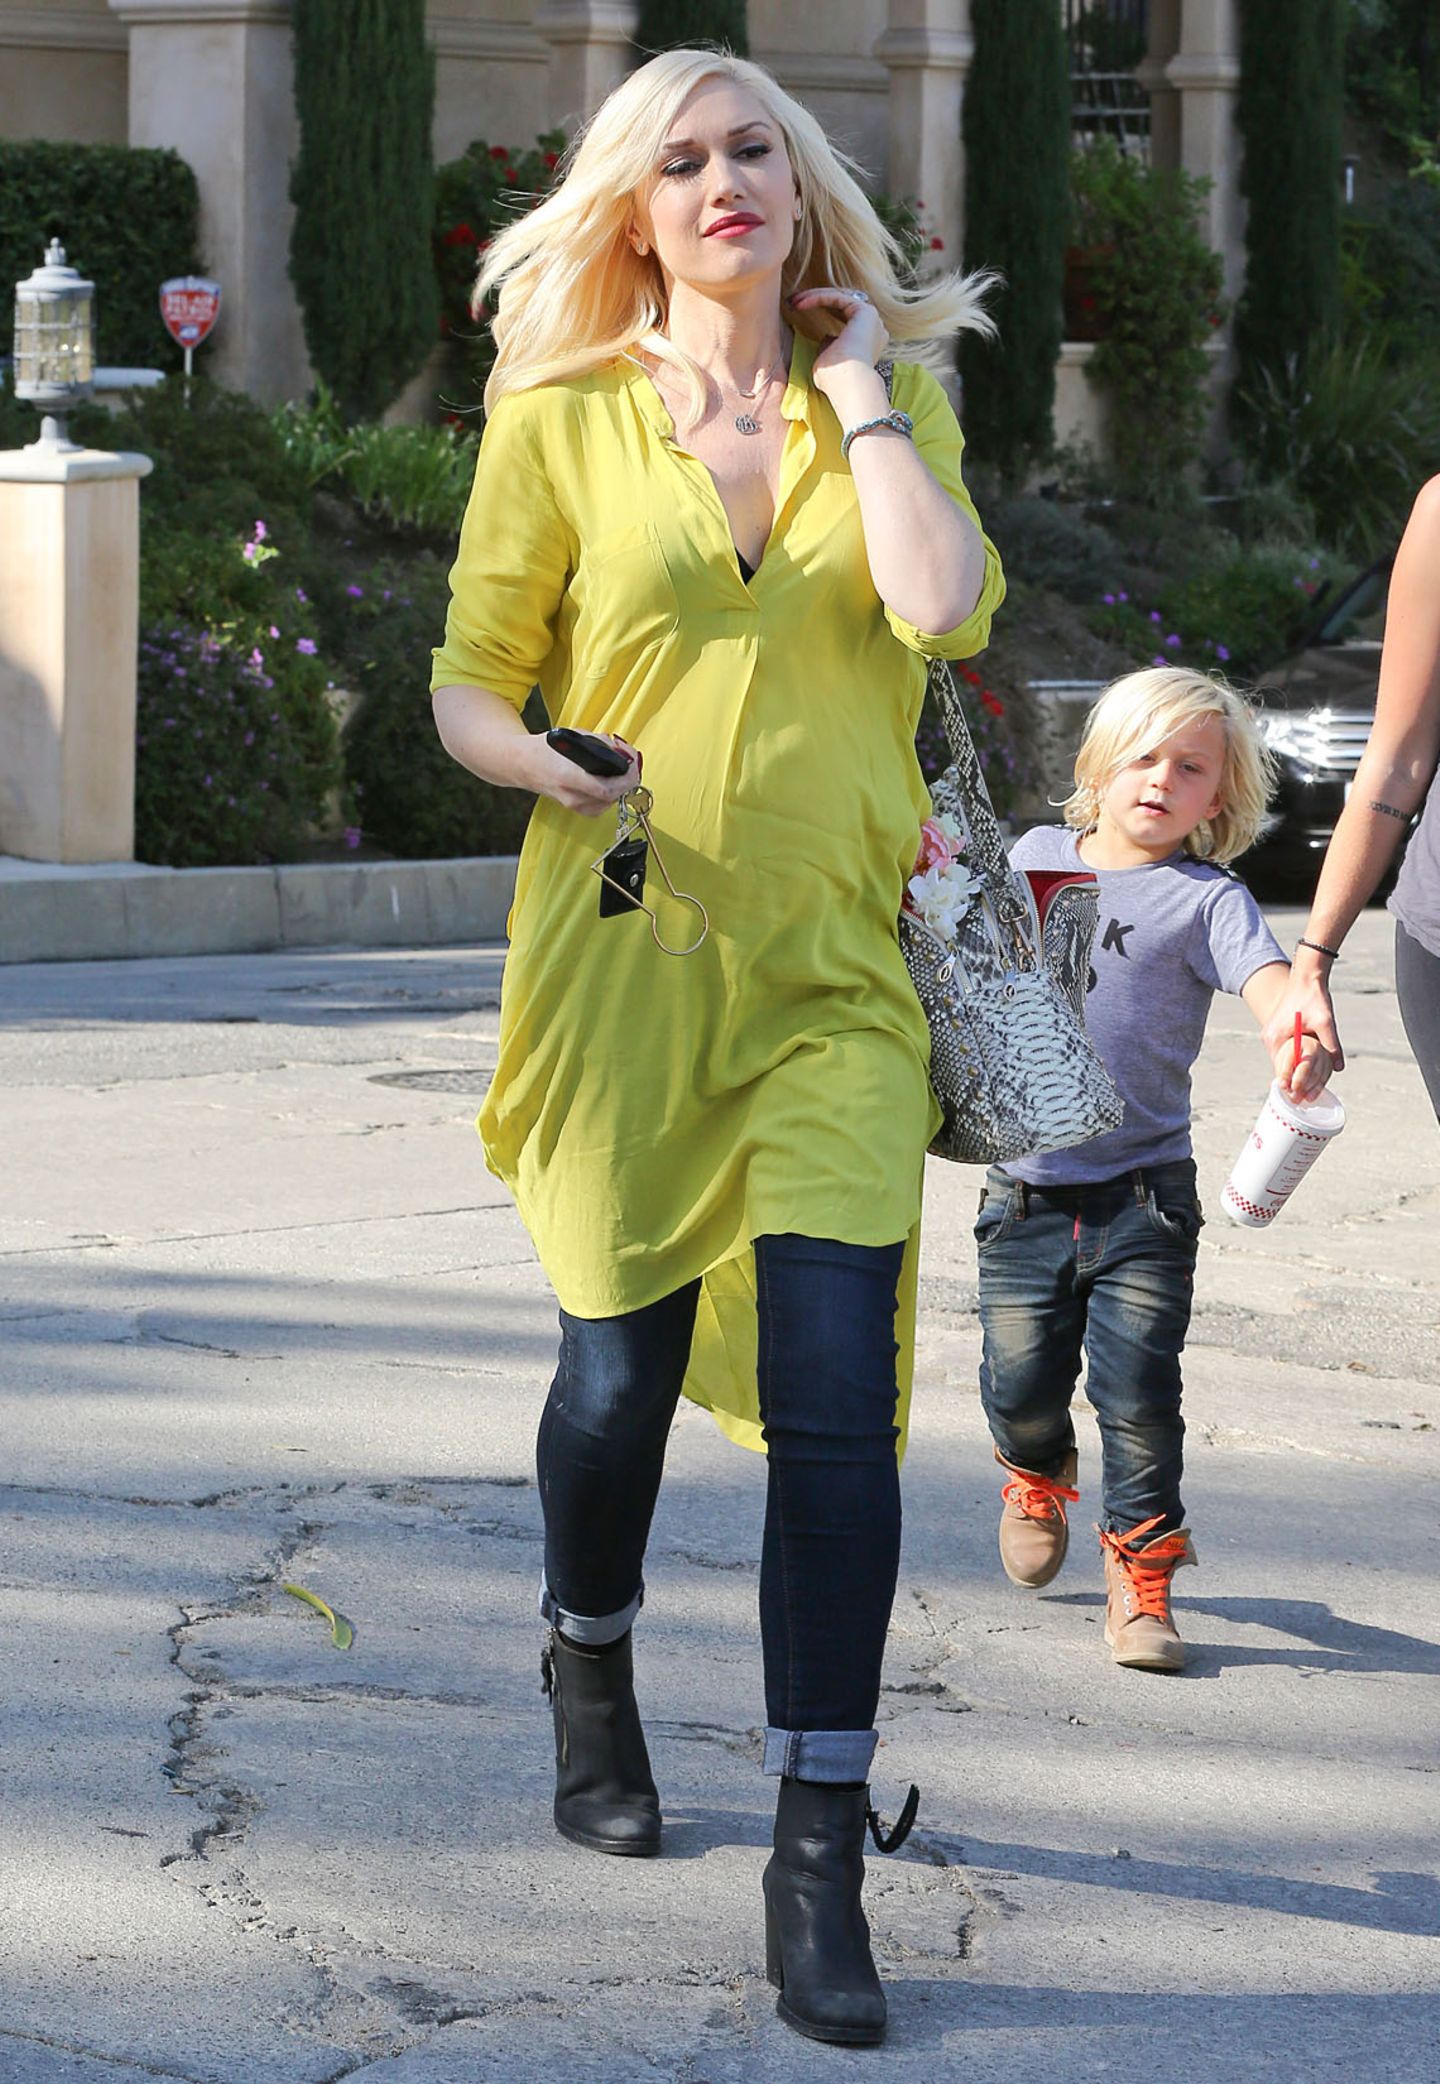 Farbklecks: In der neongelben Tunika getragen mit dunkler Slim-Jeans ist Gwen Stefani nicht zu übersehen.